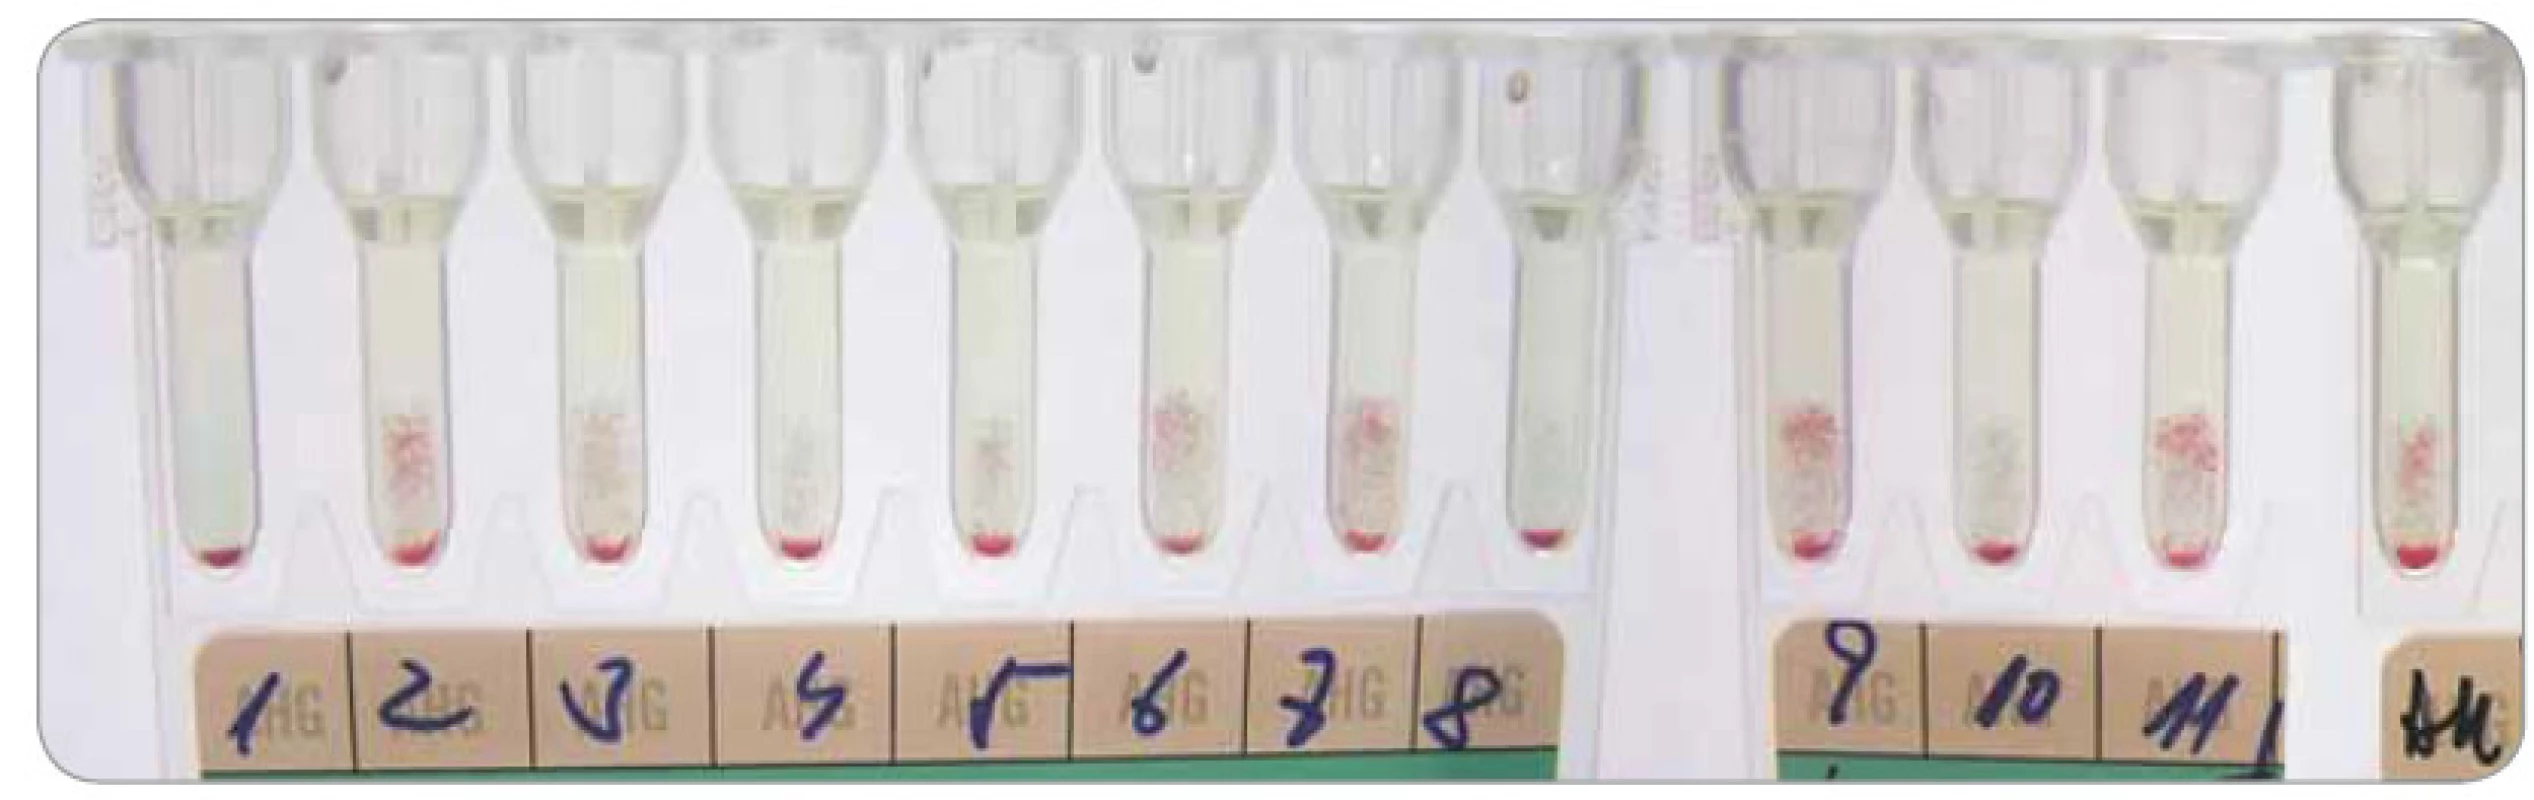 Identifikace erytrocytových protilátek na gelové kartě DG Gel (Grifols) – nediagnostický nález příčinou daratumumabu interferujícího v LISS-NAT.